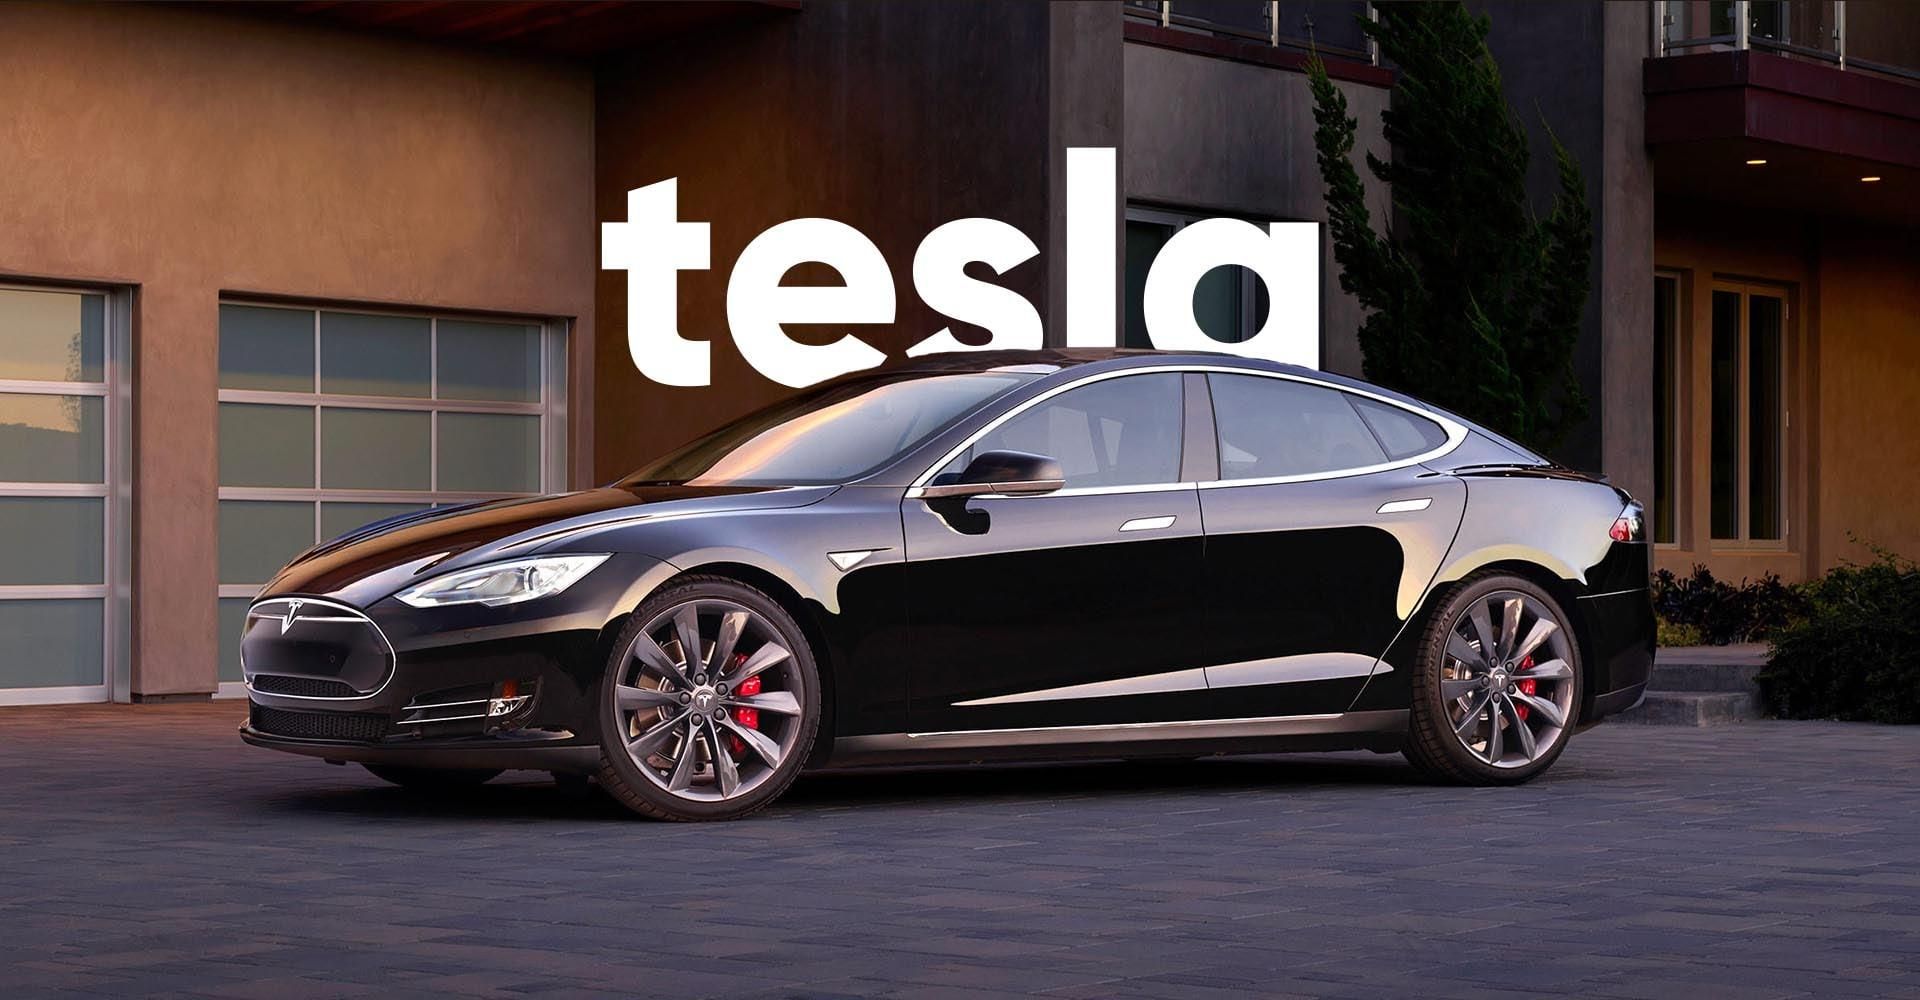 Автопилот автомобиля Tesla проверили на надежность: неожиданные результаты